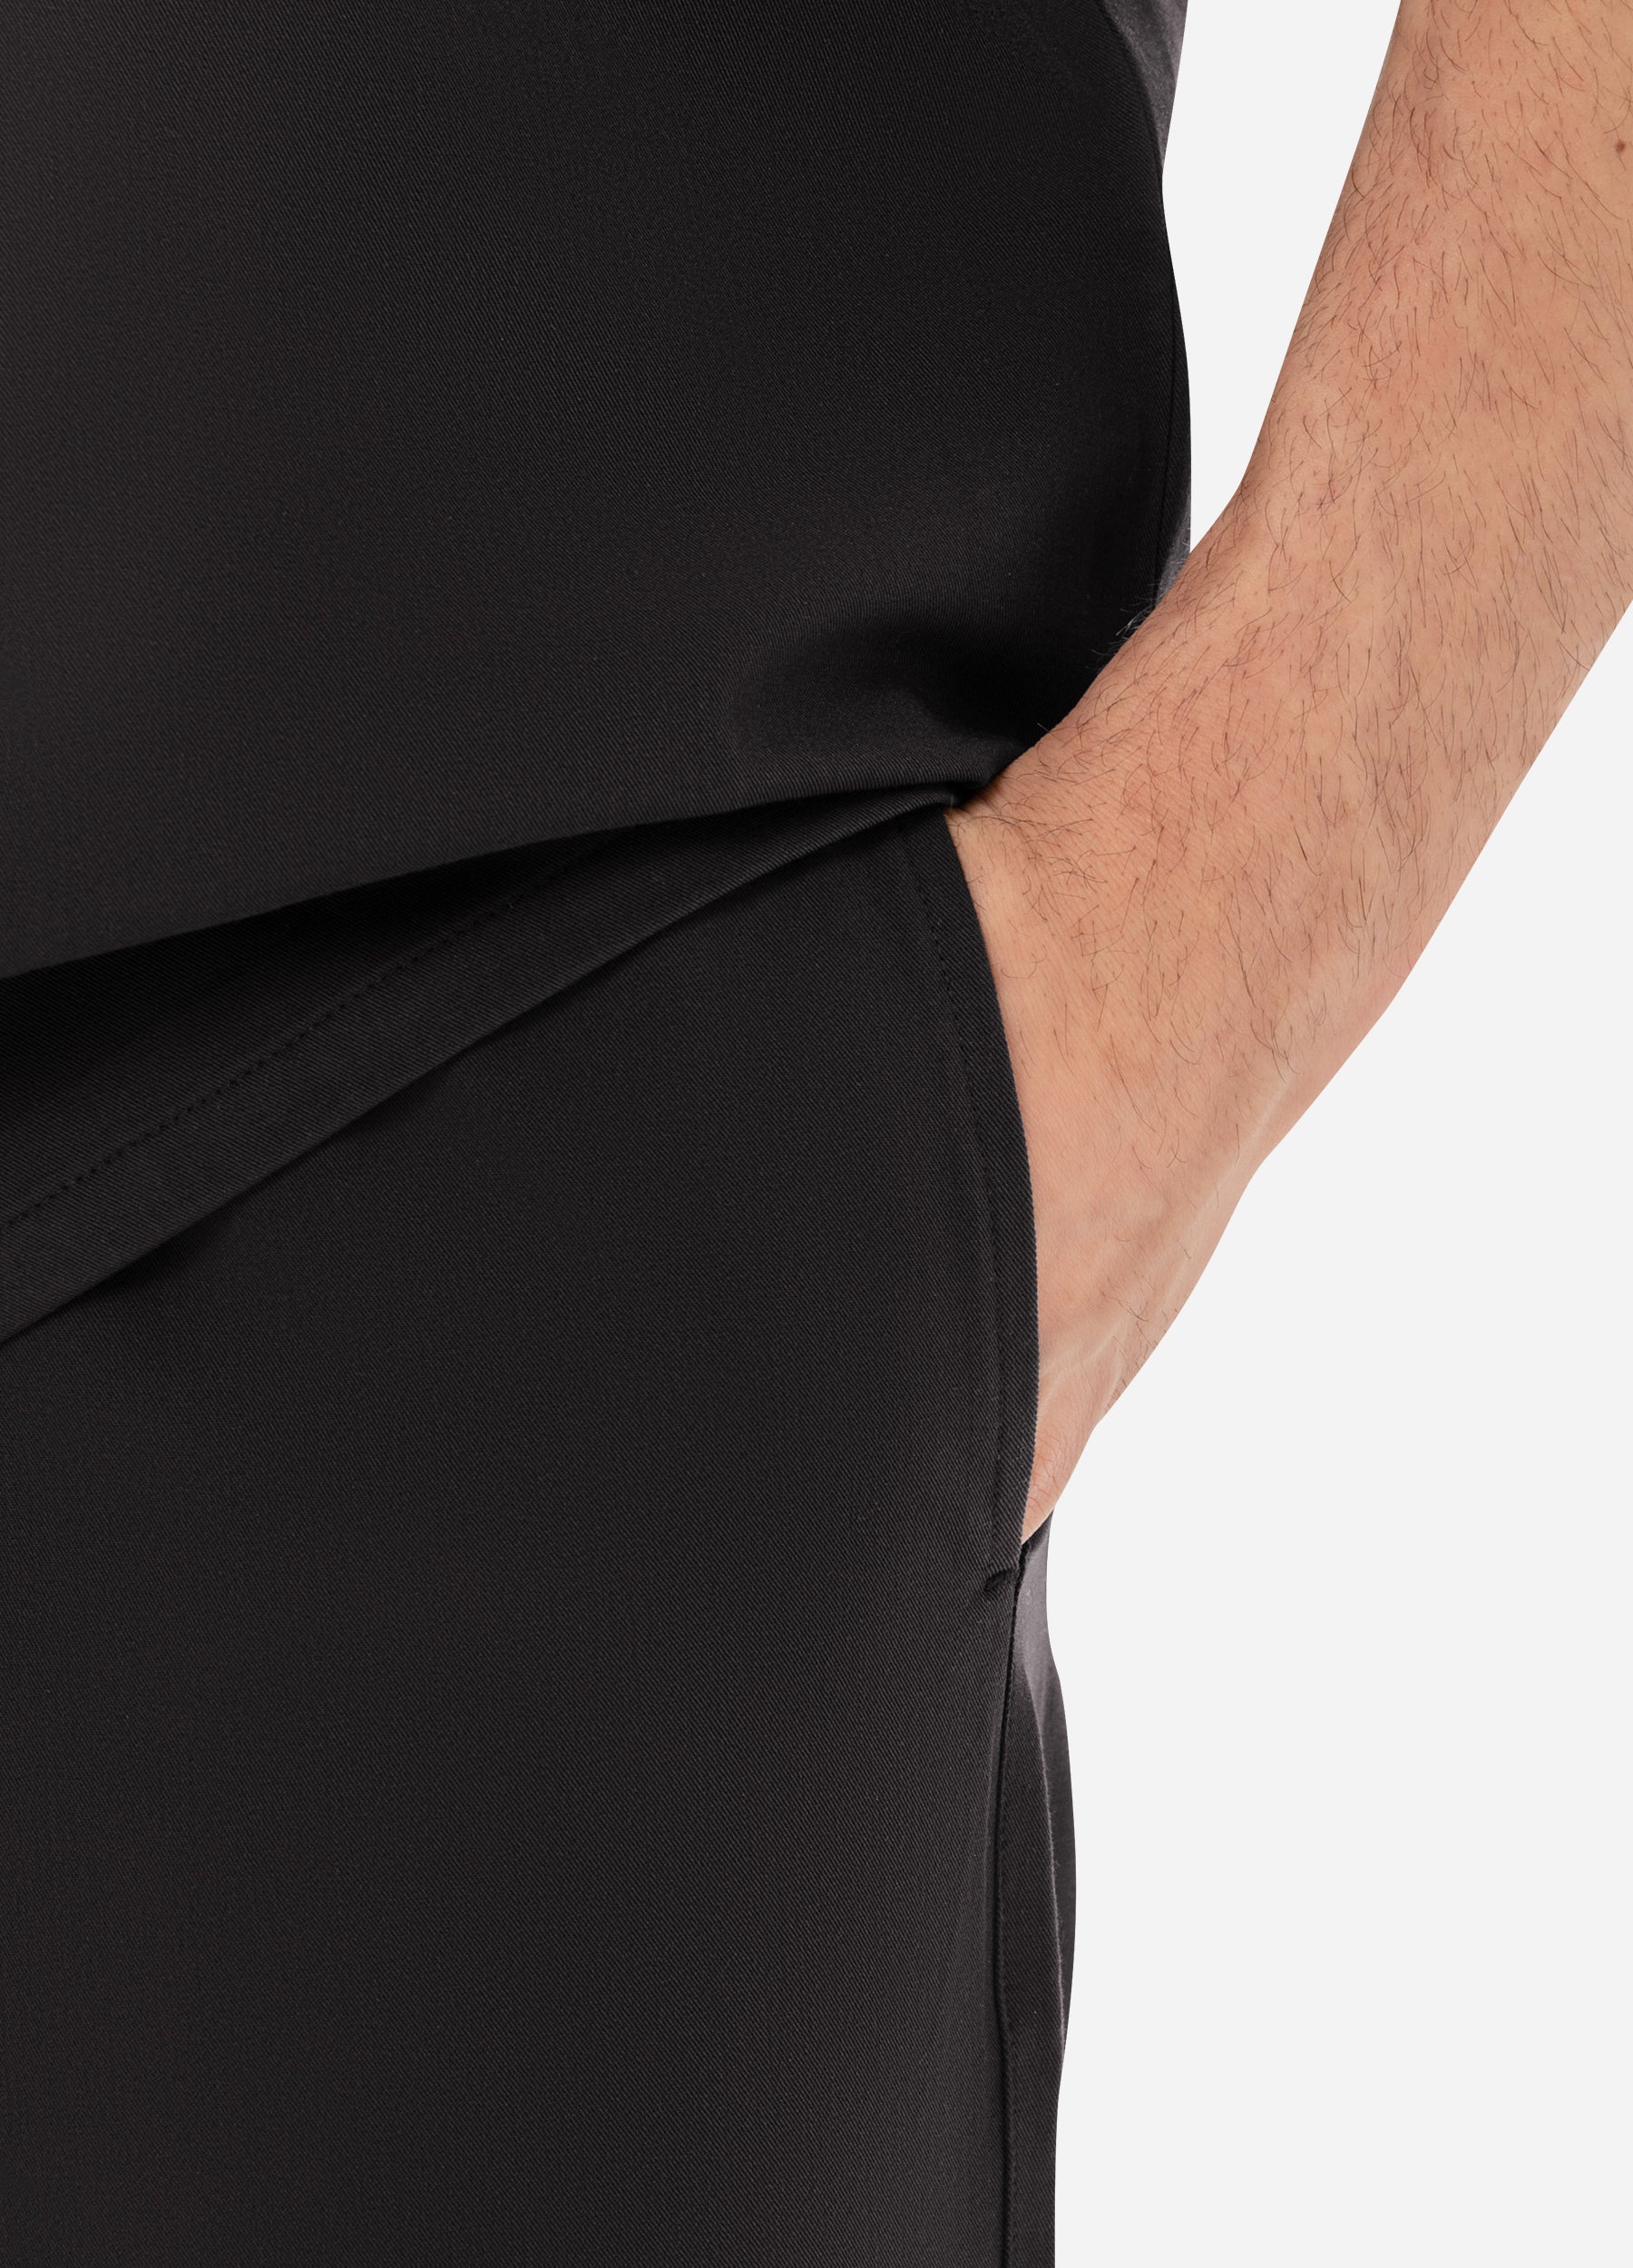 Pantalon médical coupe ajustée à 4 poches pour homme